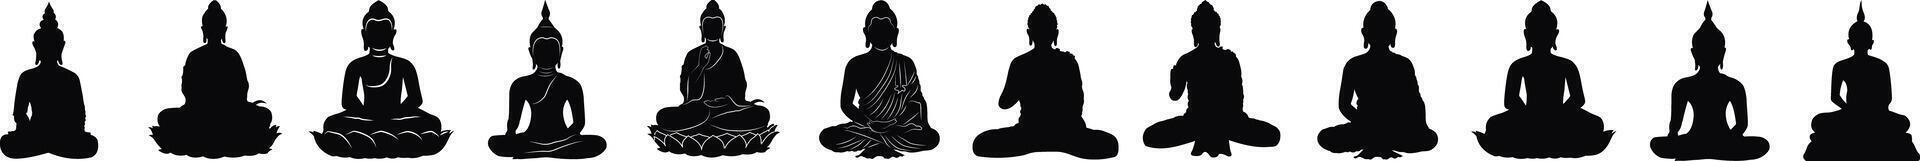 señor gautama Buda ilustración para contento Buda purnima, vesak día social medios de comunicación enviar , web bandera vector